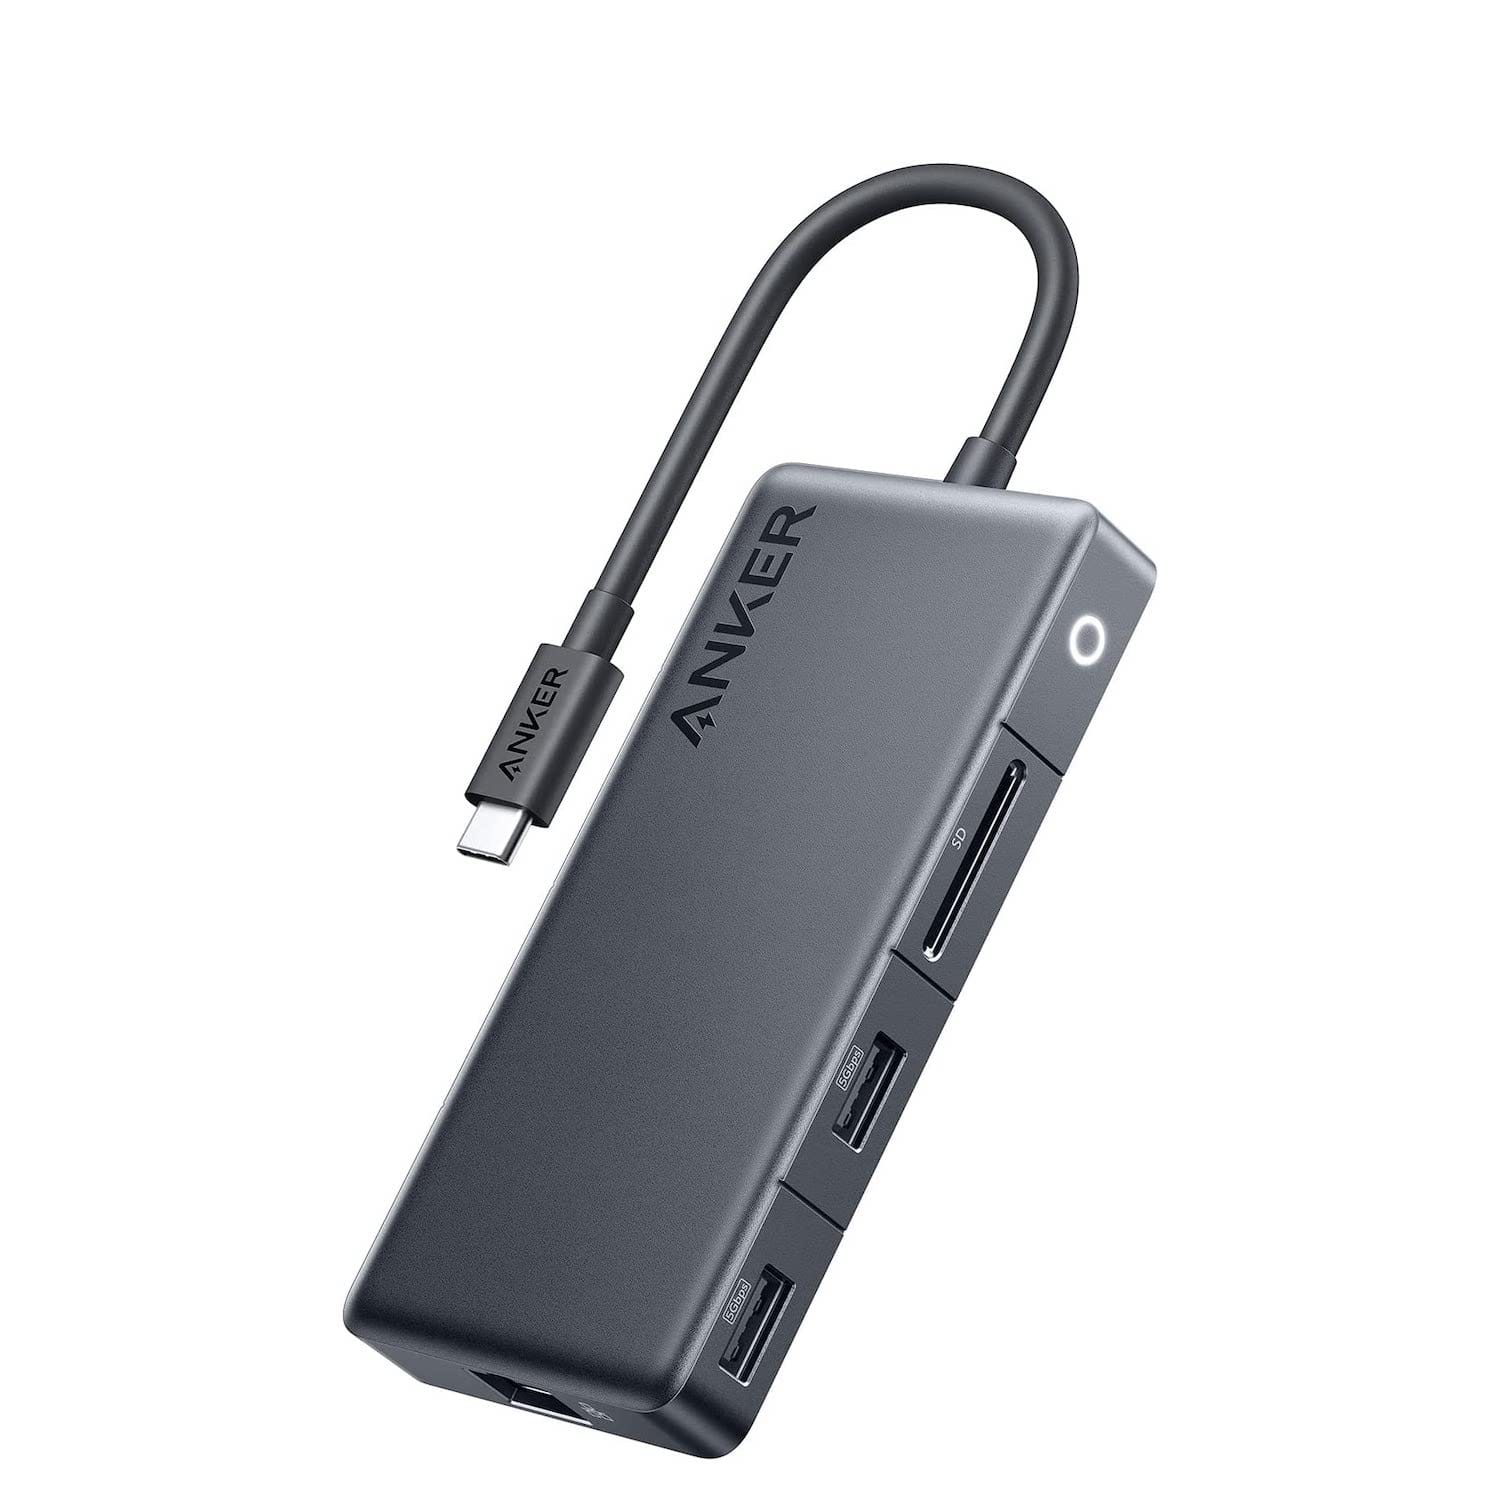 Anker、7-in-1 USB-Cハブ2機種を最大30%オフで提供